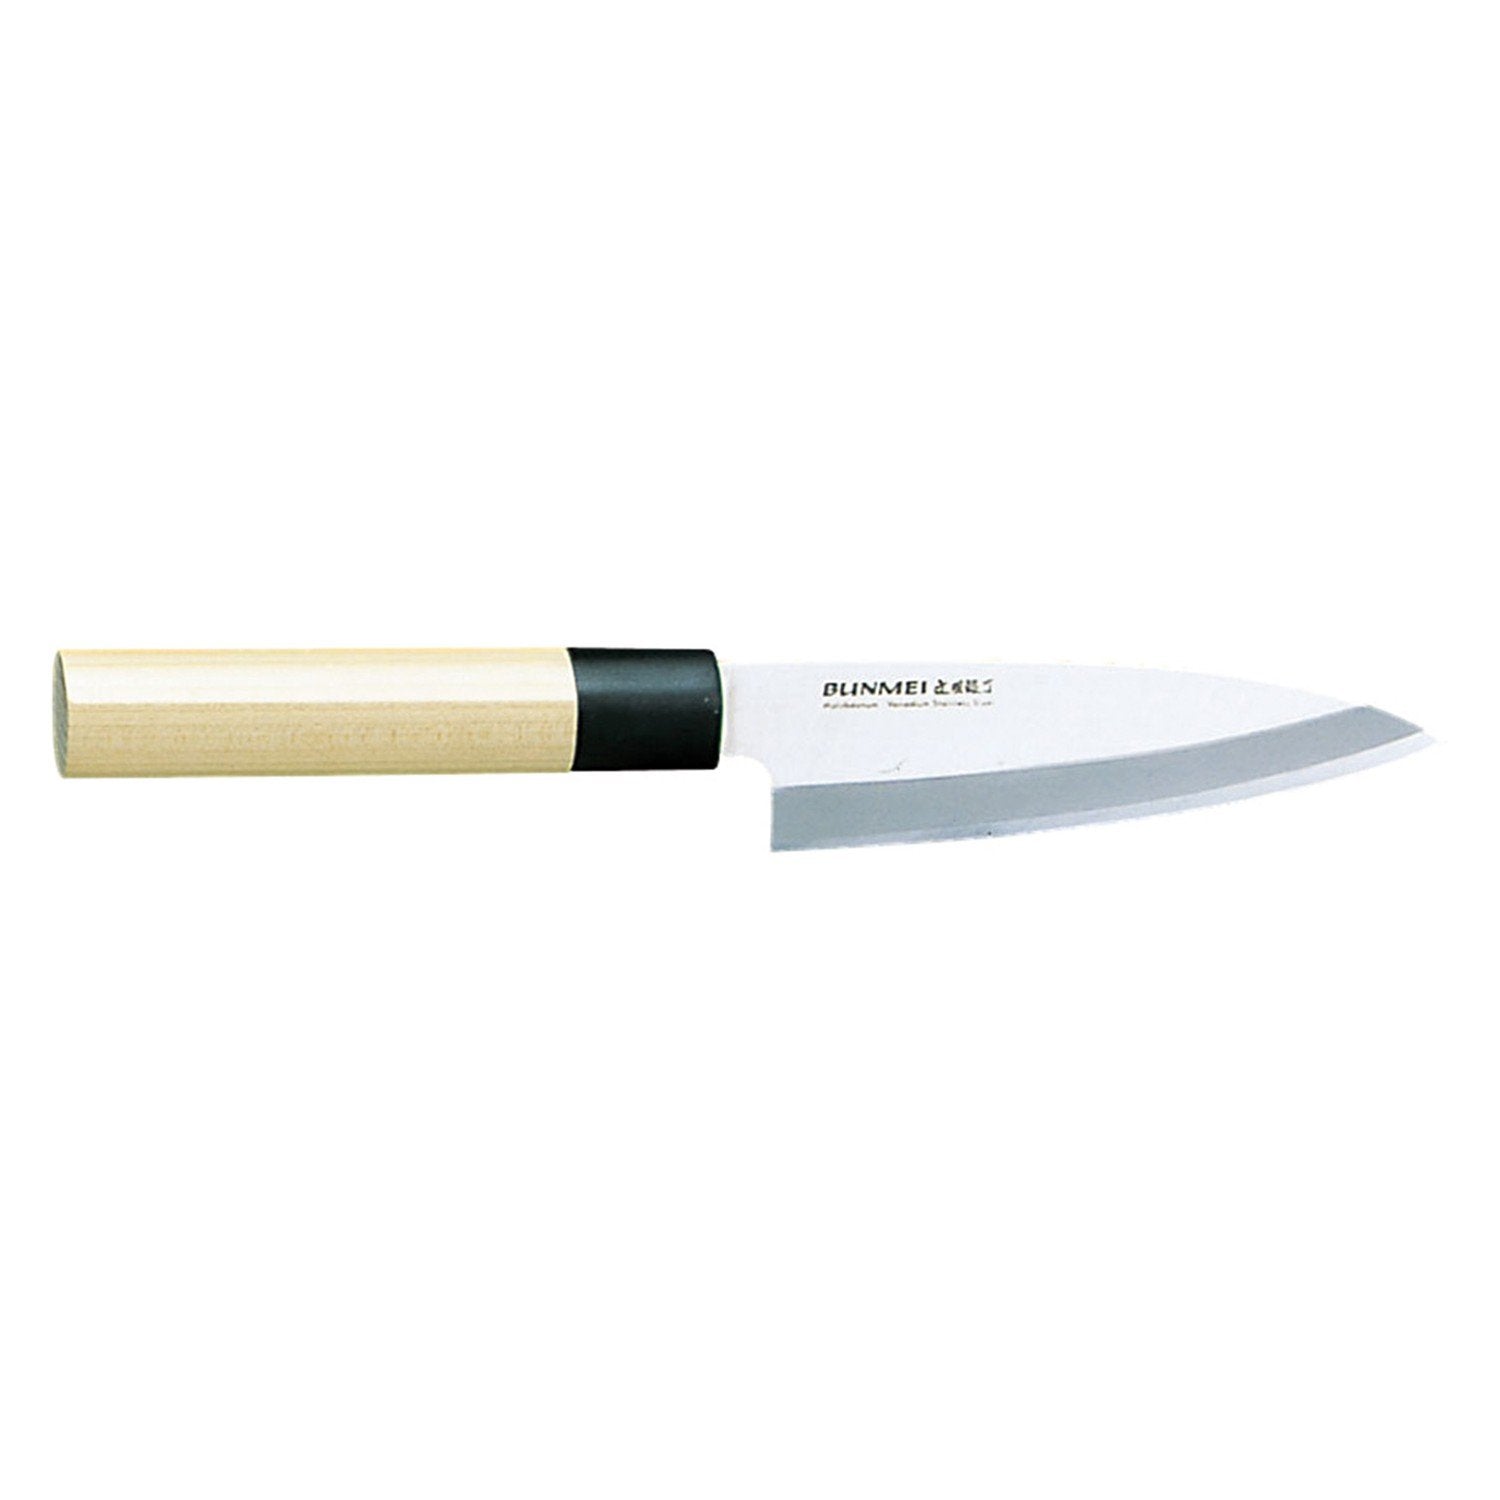 Global Bunmei deba kniv 1801/105 mm